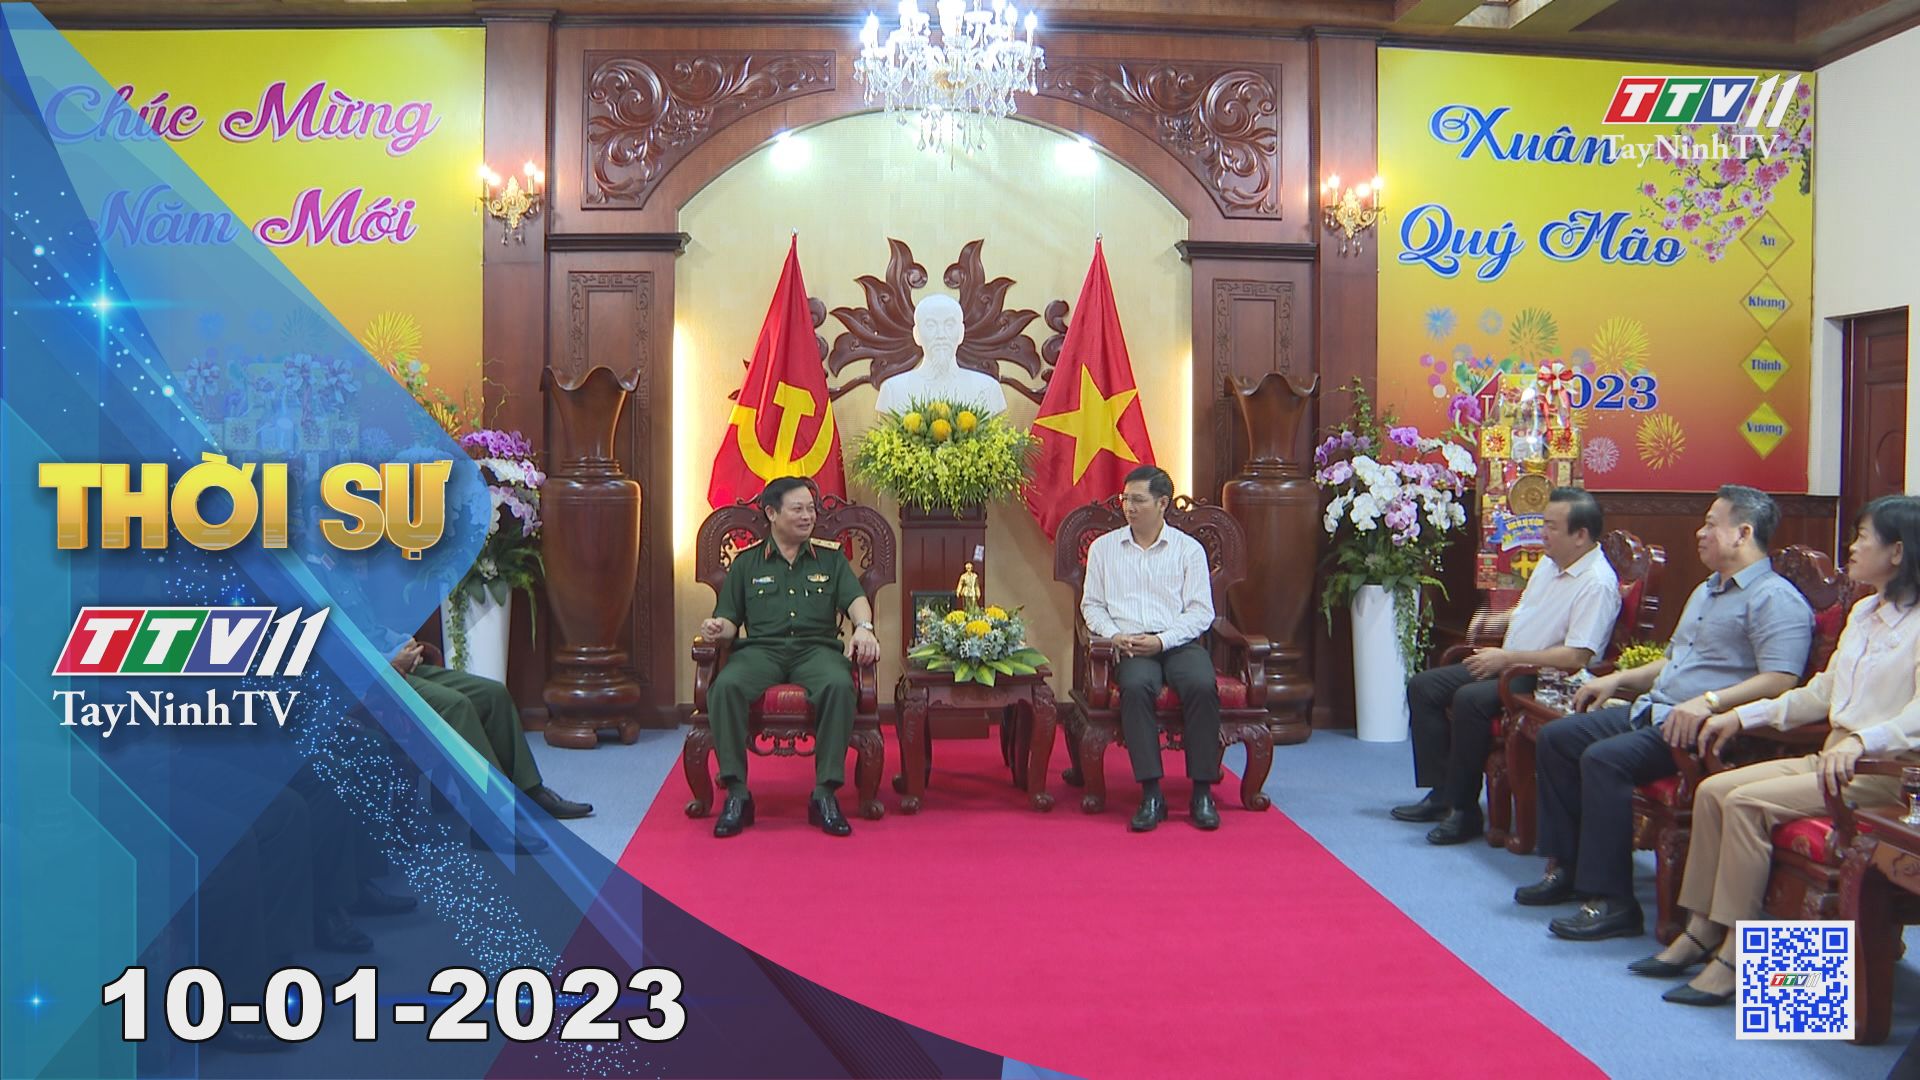 Thời sự Tây Ninh 10-01-2023 | Tin tức hôm nay | TayNinhTV